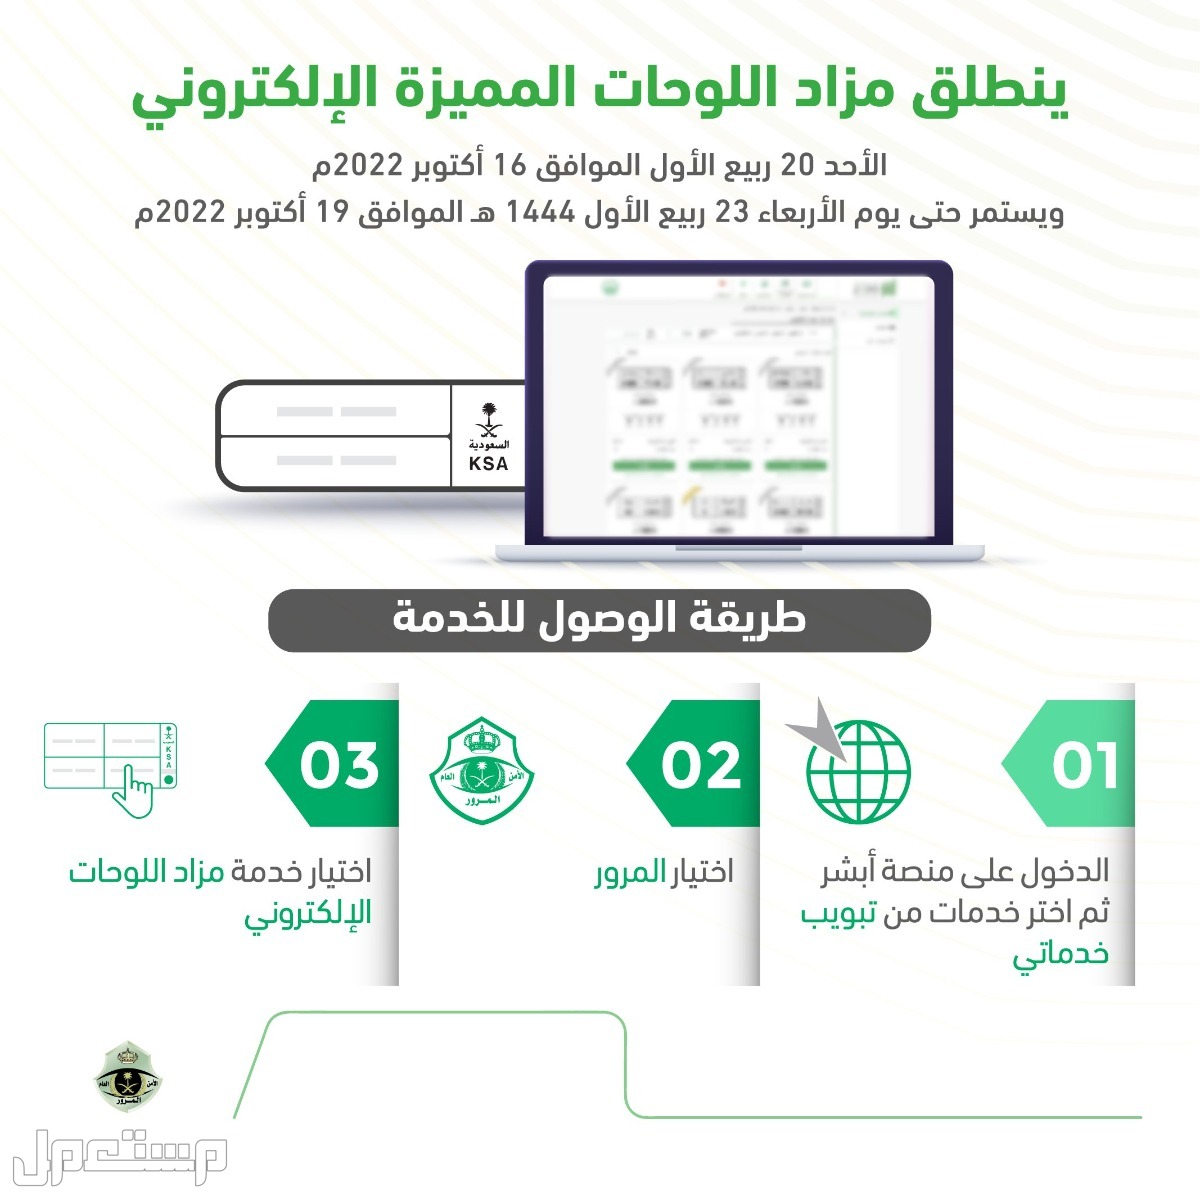 طريقة حجز موعد لحضور مزاد اللوحات الإلكتروني عبر أبشر في السعودية